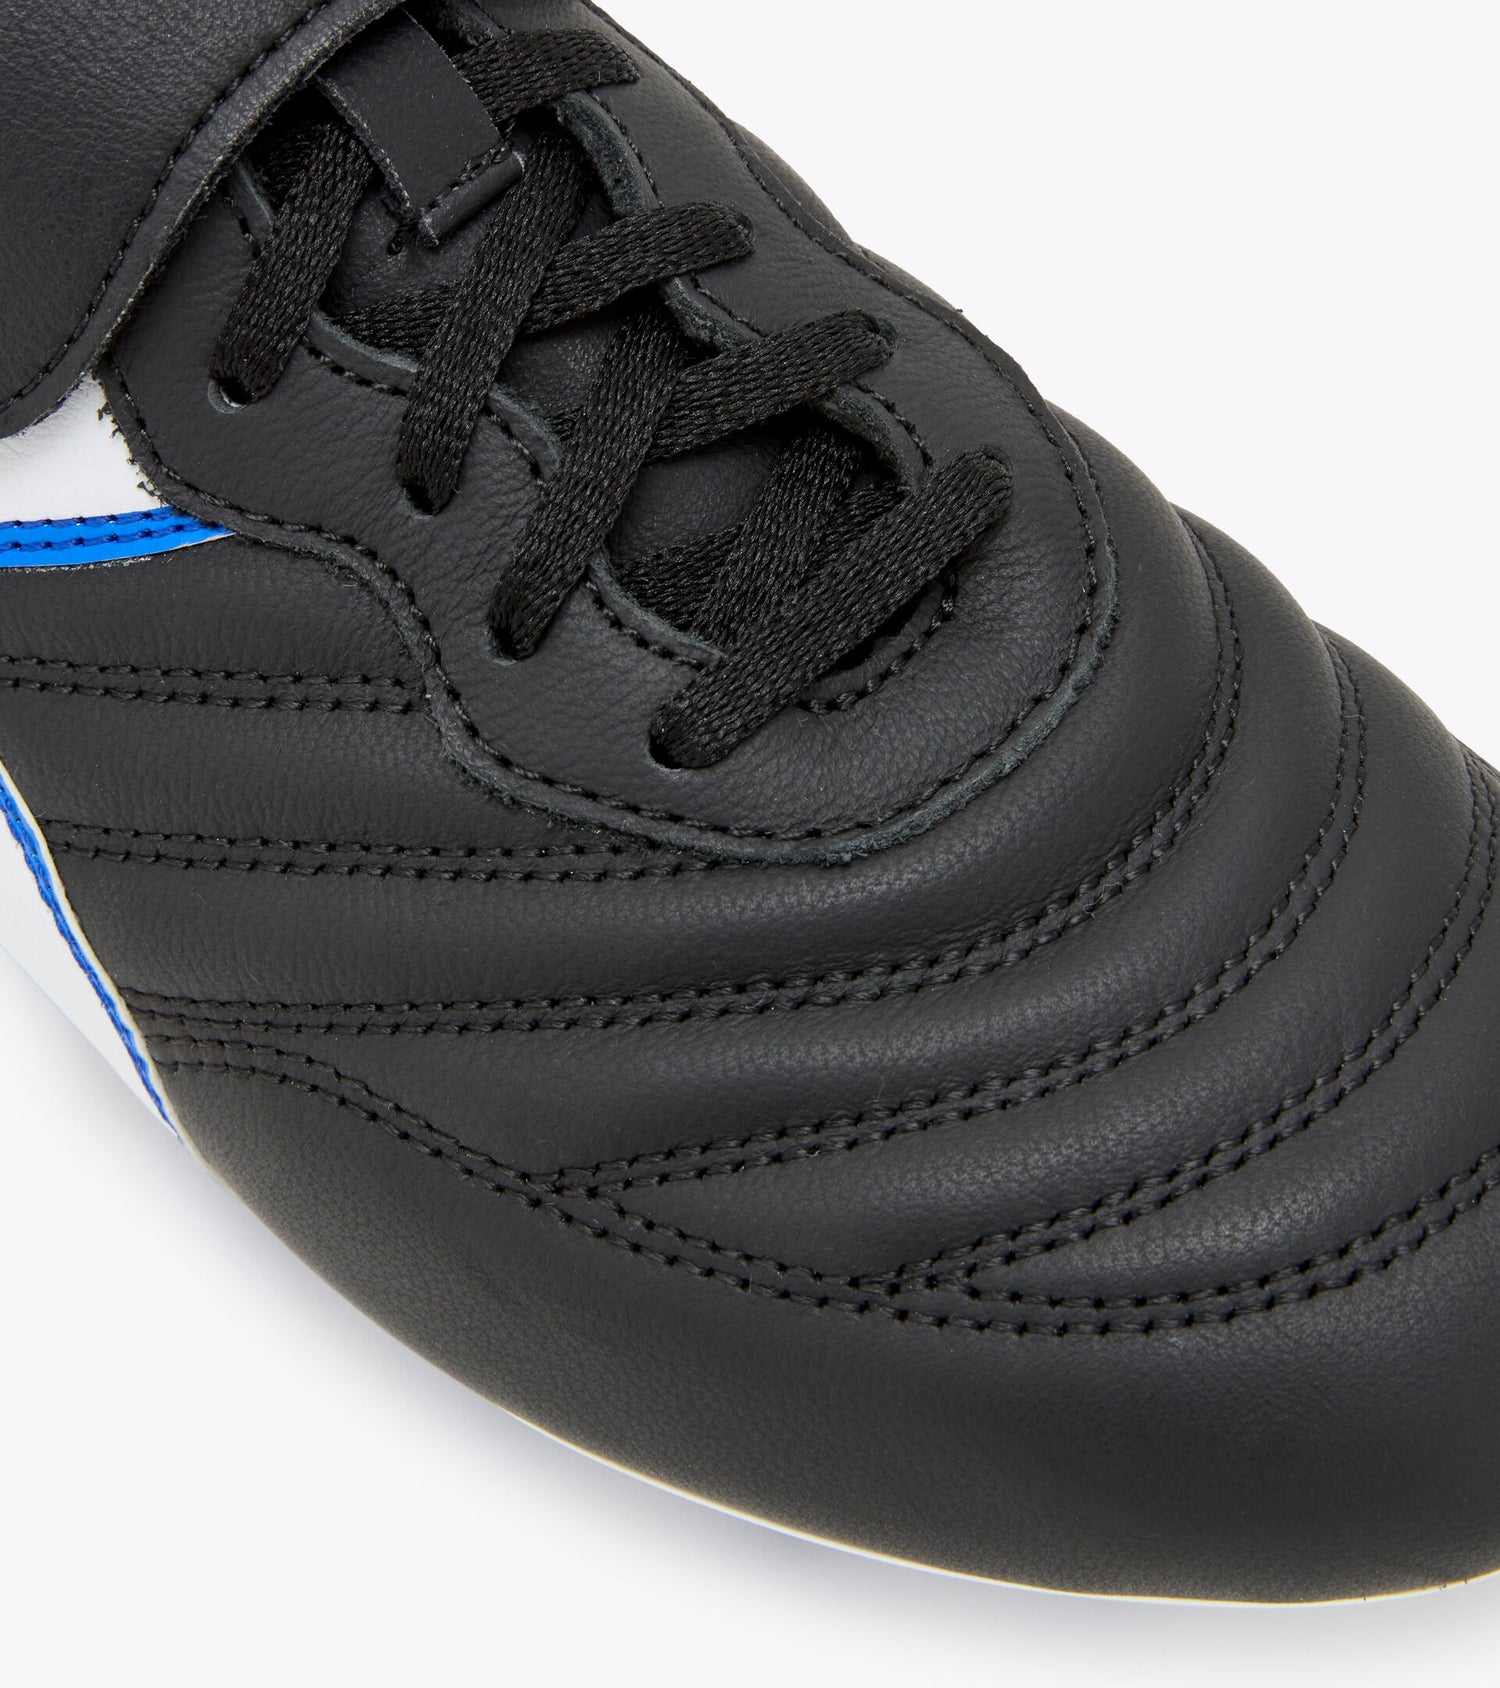 Diadora Brasil OG LT T MDPU Soccer Boots - Black/White/Royal Blue